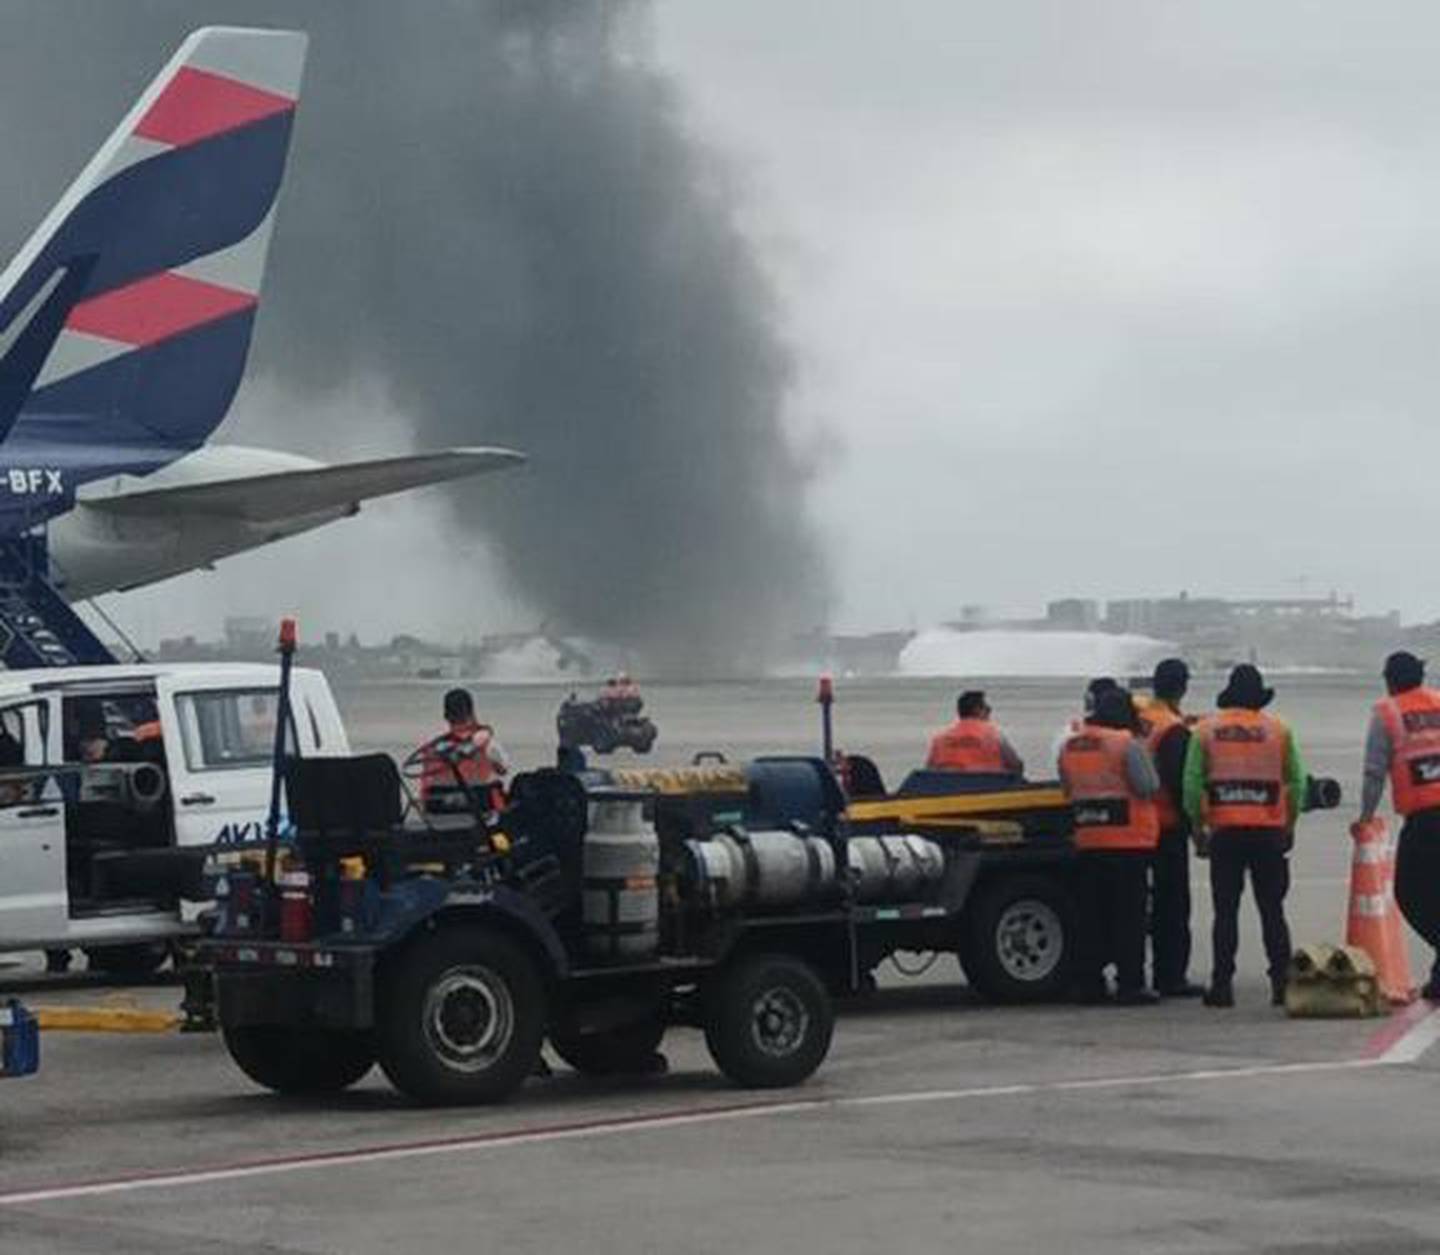 Las víctimas del Aeropuerto Jorge Chávez fueron identificados como: Angel Torres de la compañía de Bomberos Garibaldi 6 y Nicolás Santa Gadea de la compañía Garibaldi 7.dfd